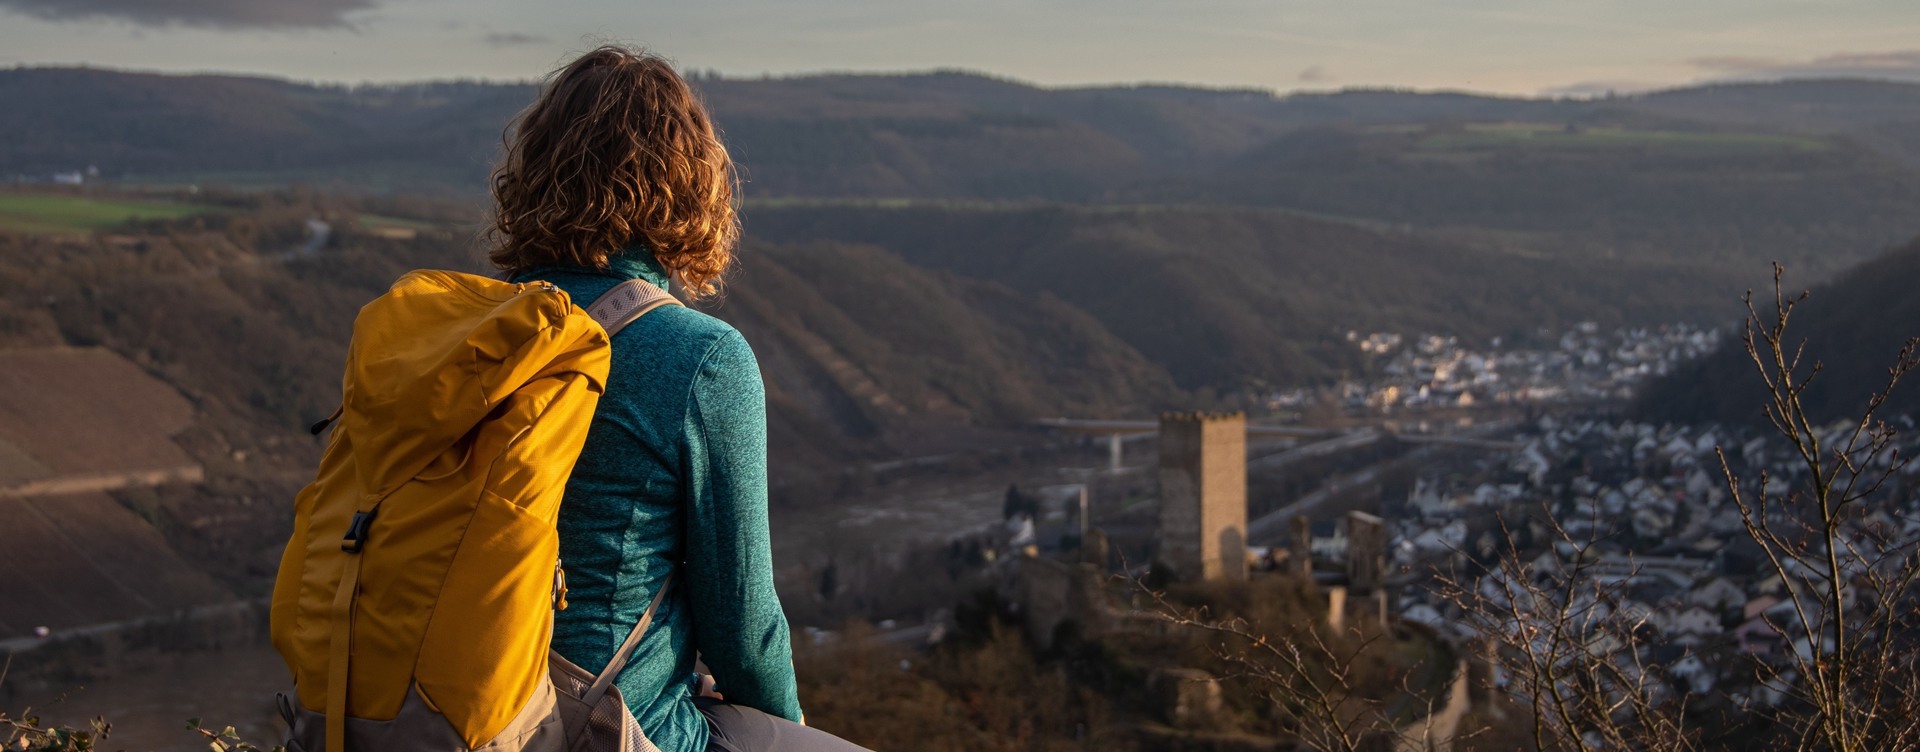 Aprovecha tu estancia en la bella región de Eifel
para hacer divertidas excursiones